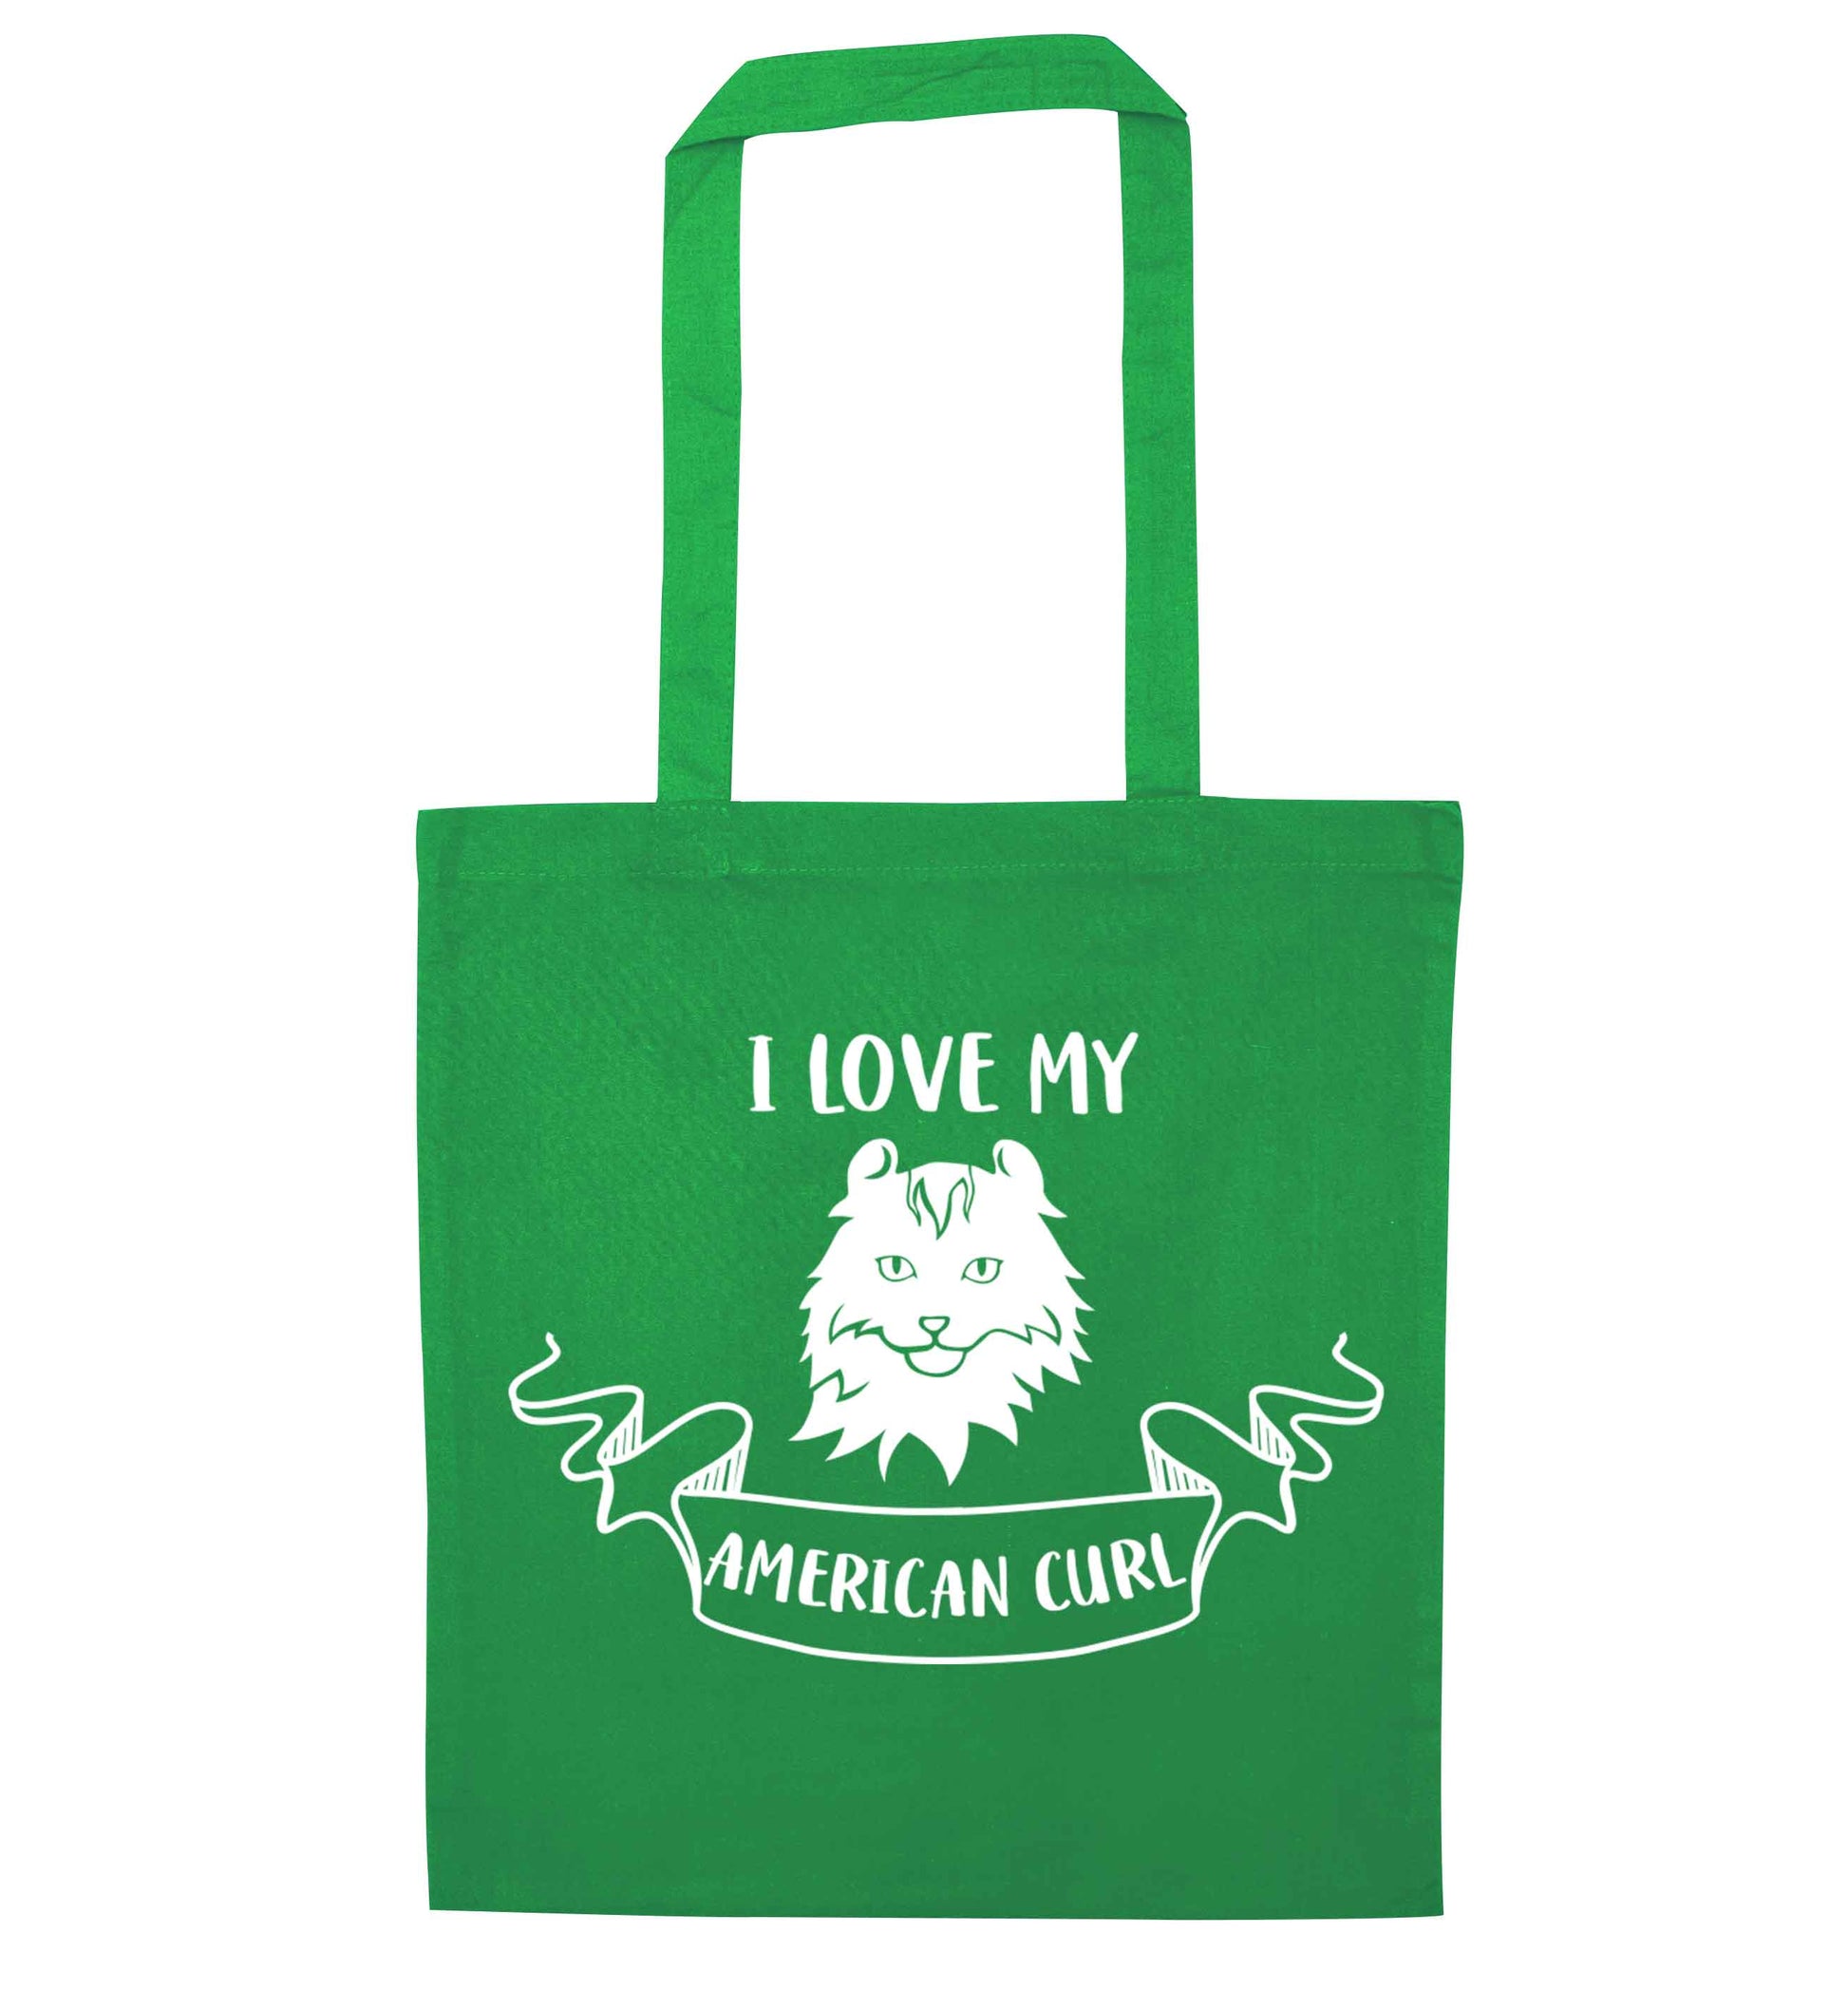 I love my American curl green tote bag